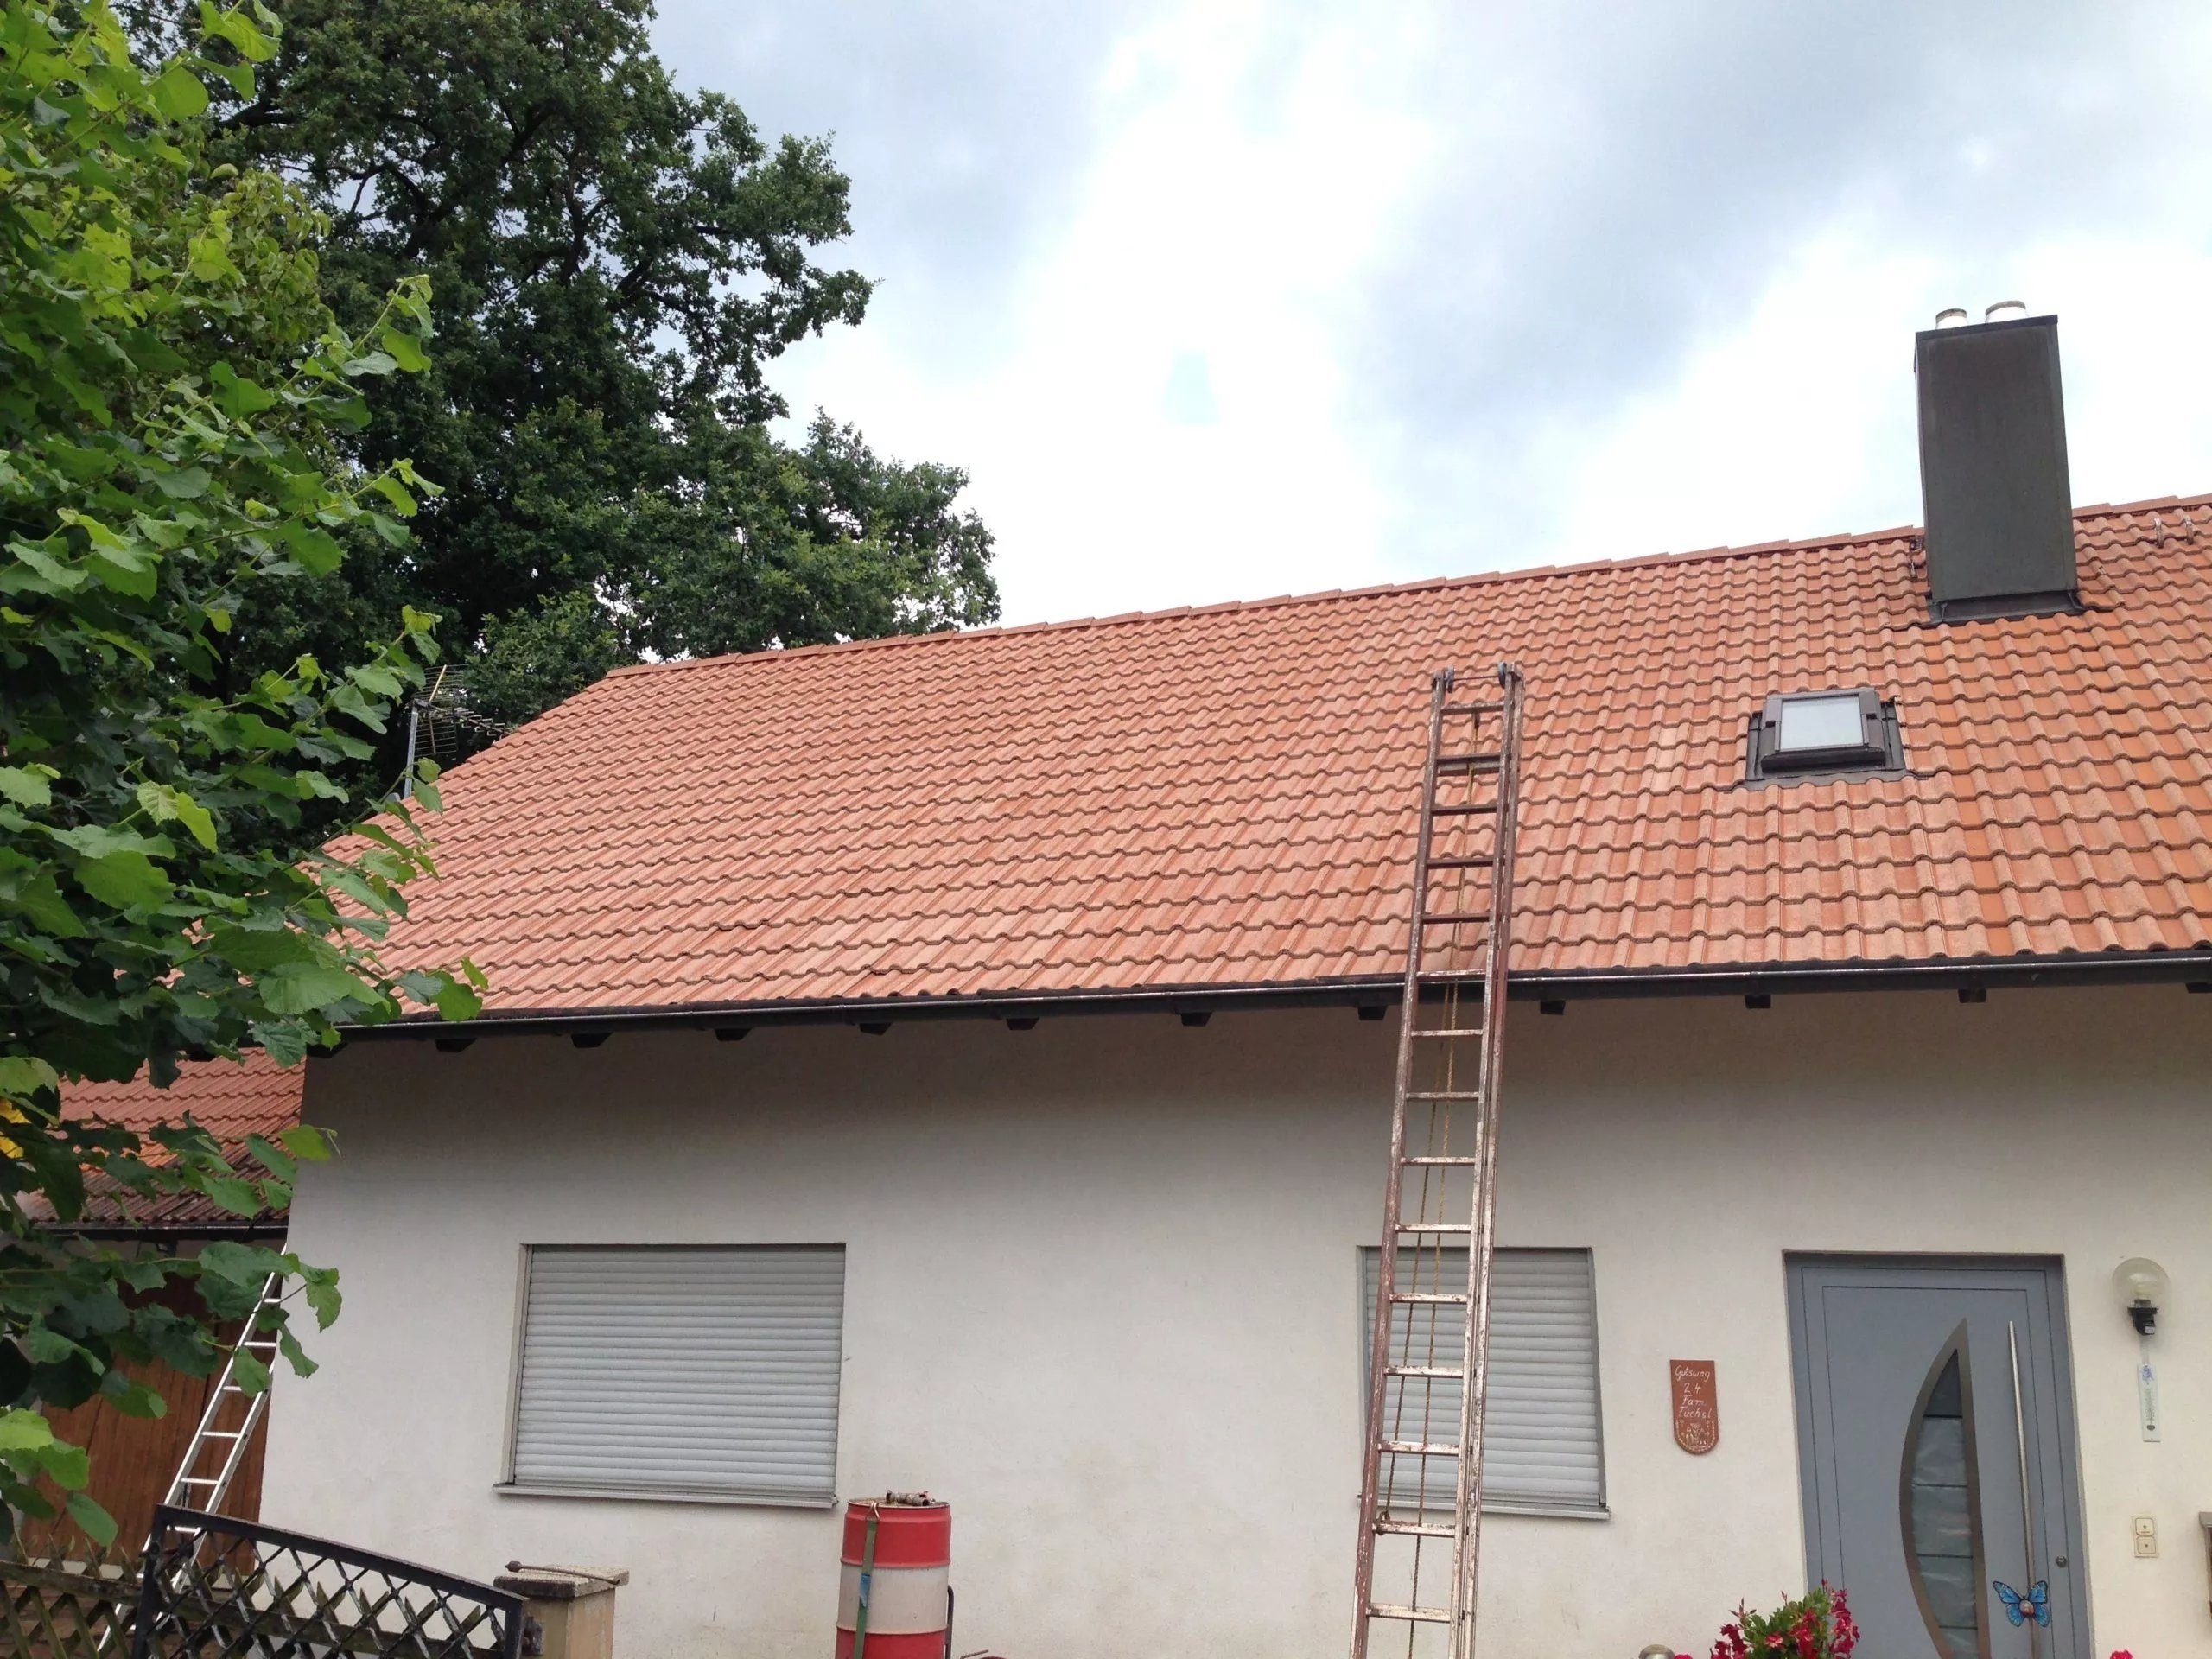 Dachreinigung mit Dachbeschichtung 6 betondachsteine nach der reinigung scaled